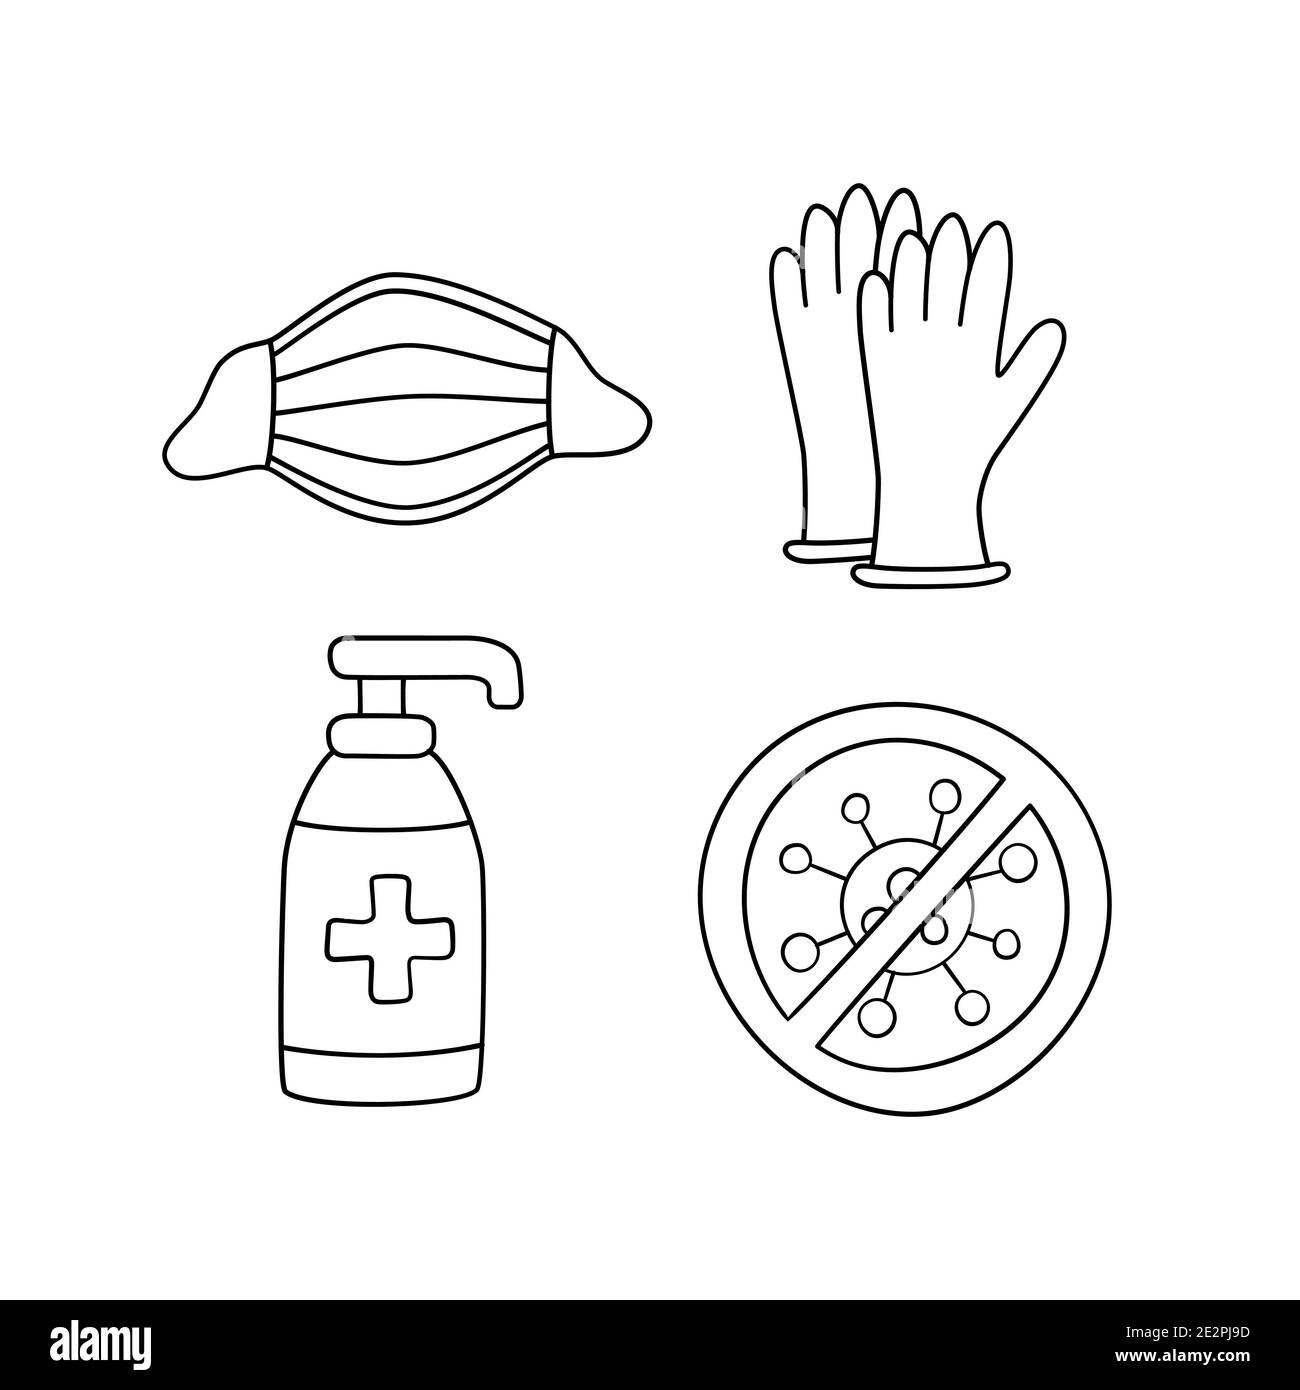 Medical face mask, latex gloves and sanitizer bottle against coronavirus Stock Vector